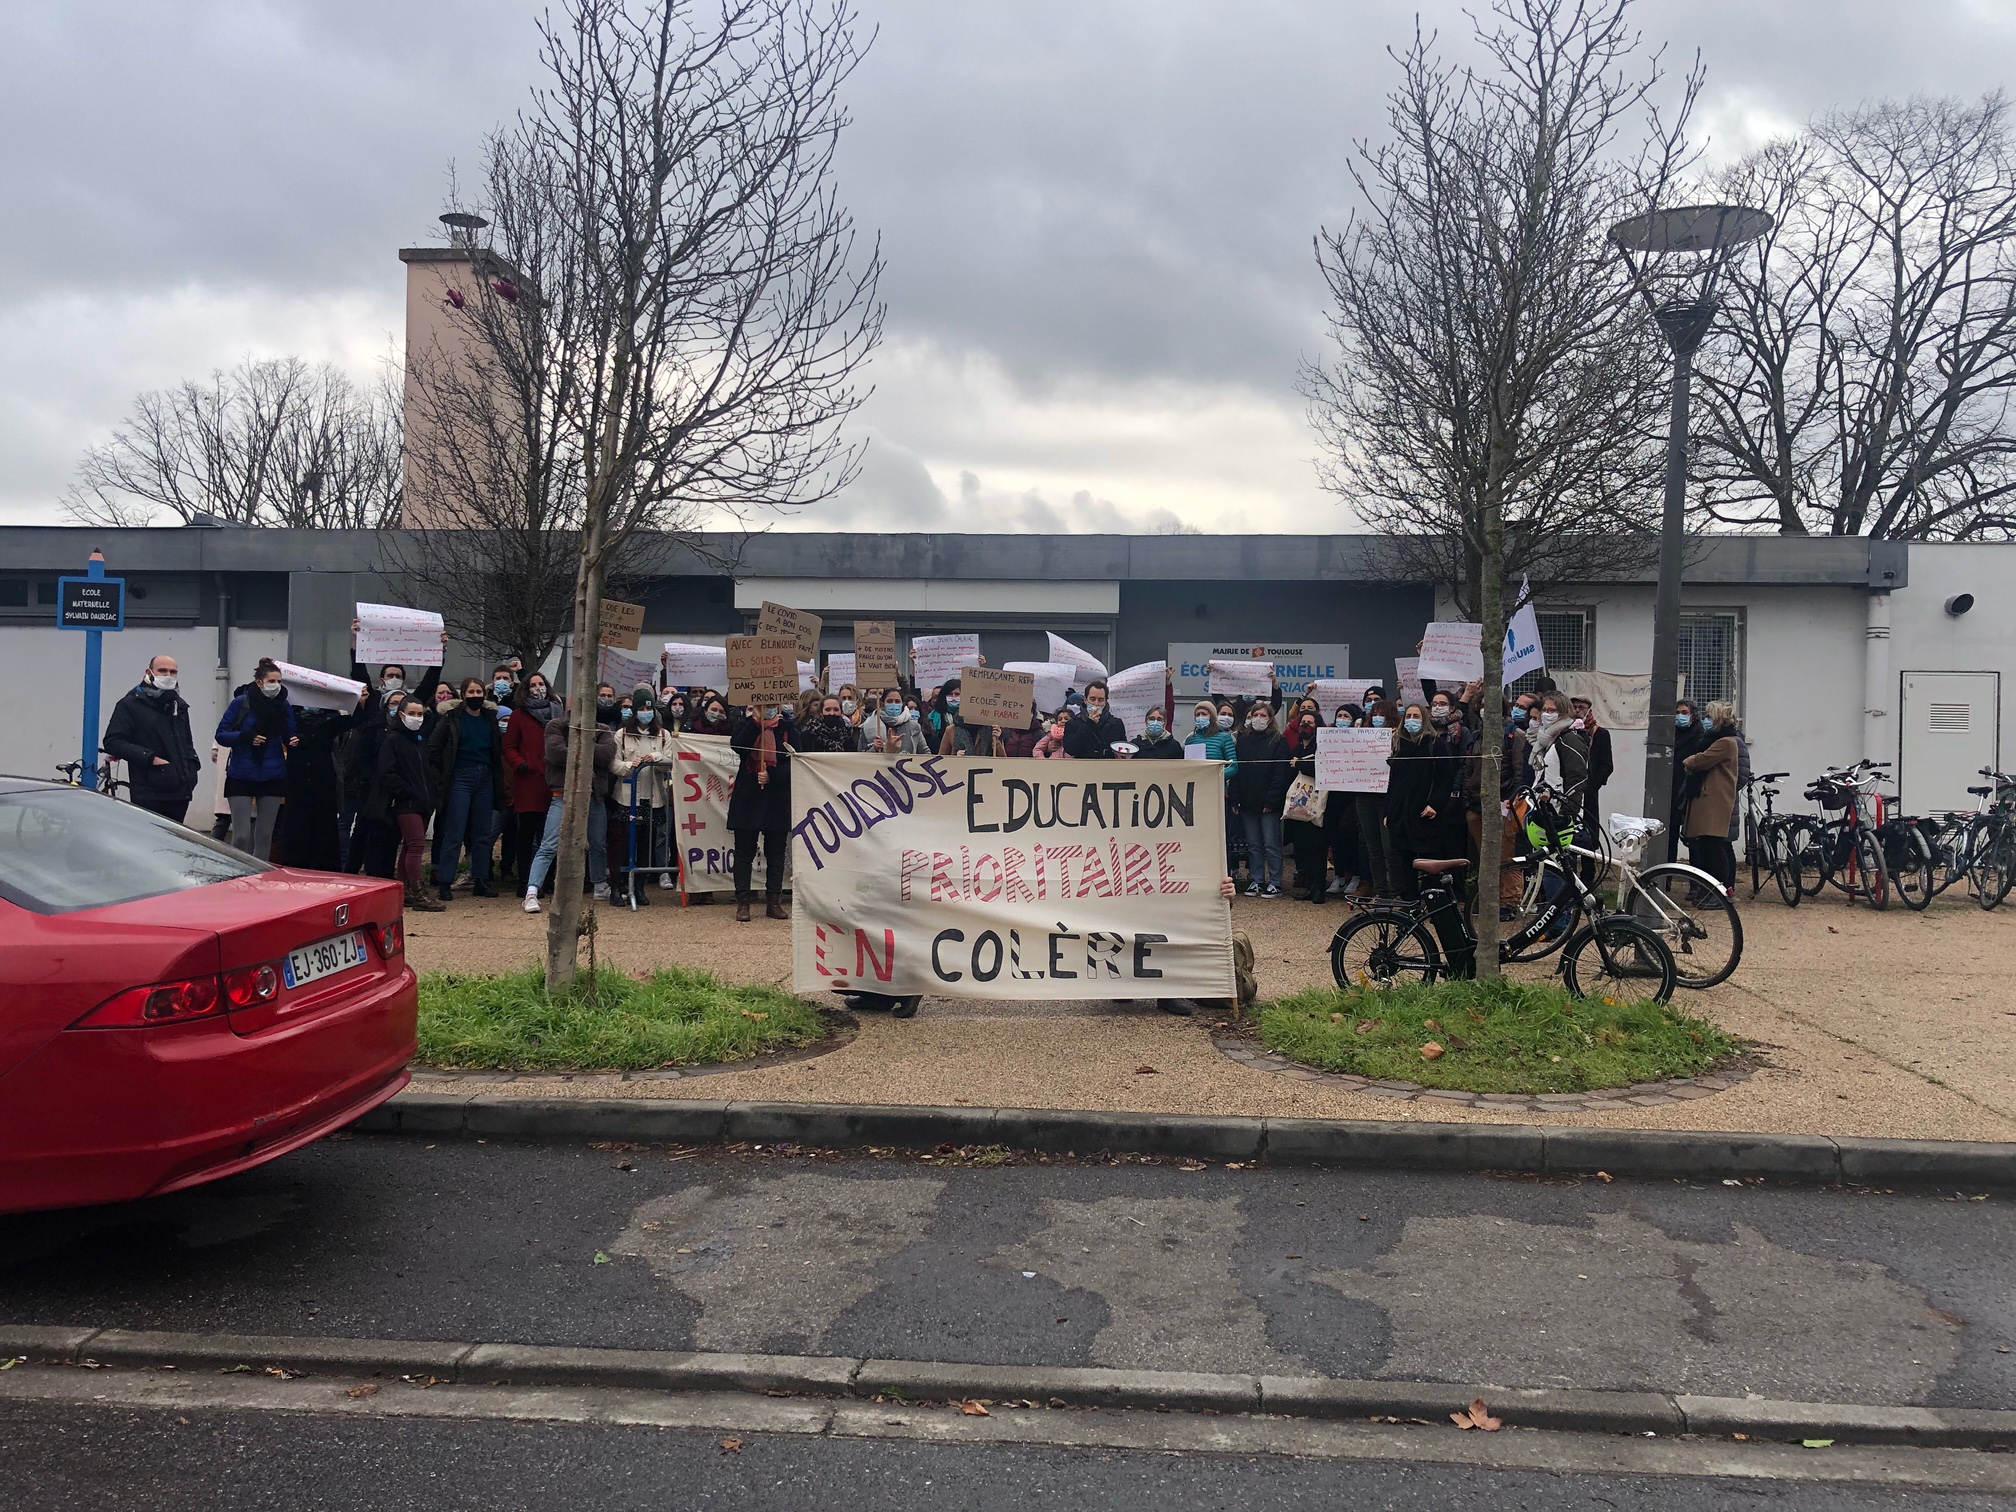 Le corps enseignant manifeste devant l'école Sylvain Dauriac pour demander plus de moyens. Crédit : Lauriane Pelao